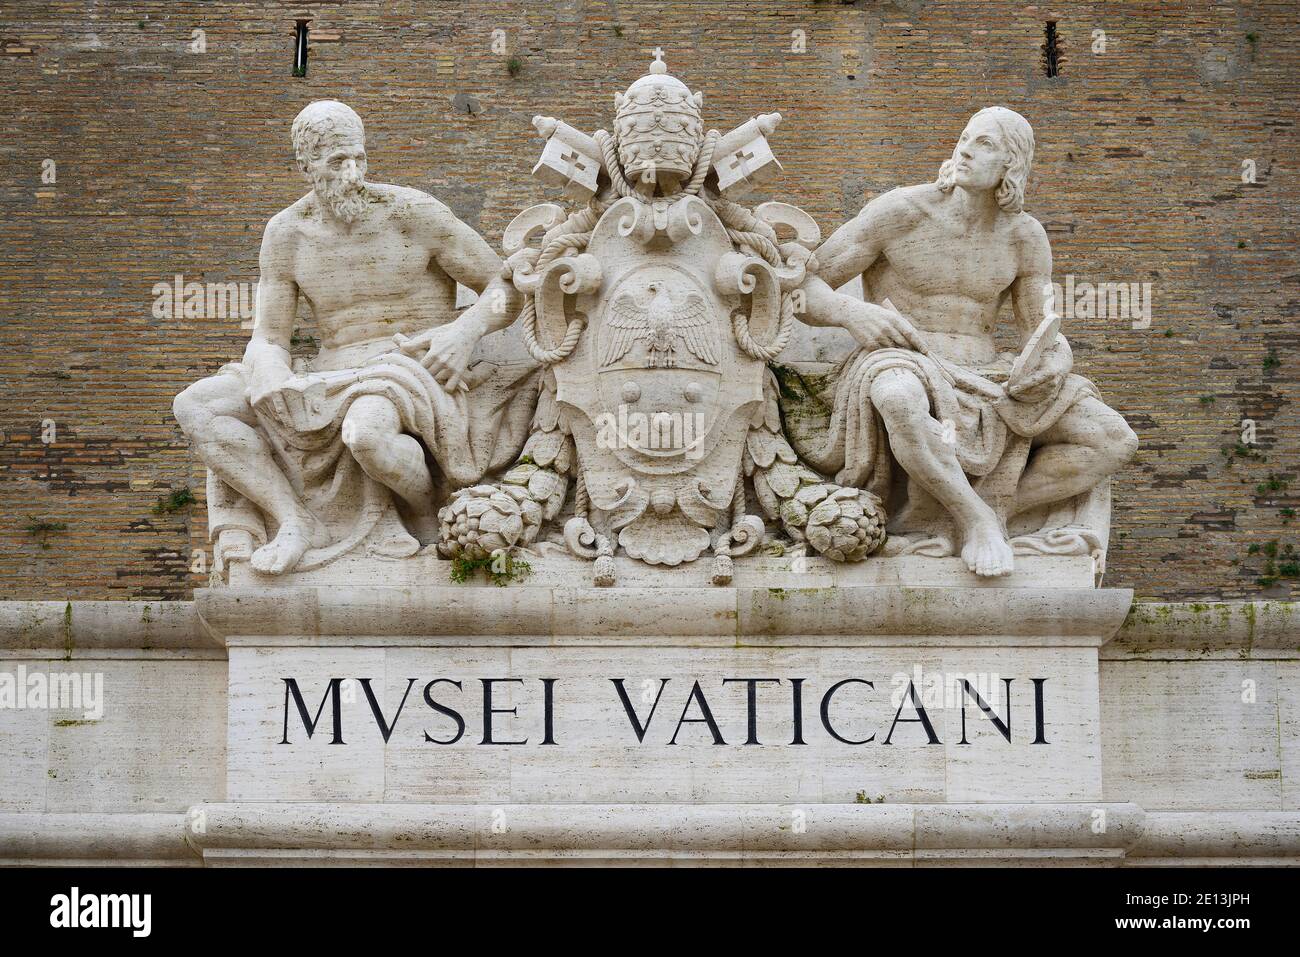 Roma. Italia. Portale d'ingresso dei Musei Vaticani con il stemma di Papa Pio XI (centro), affiancato da statue del Foto Stock